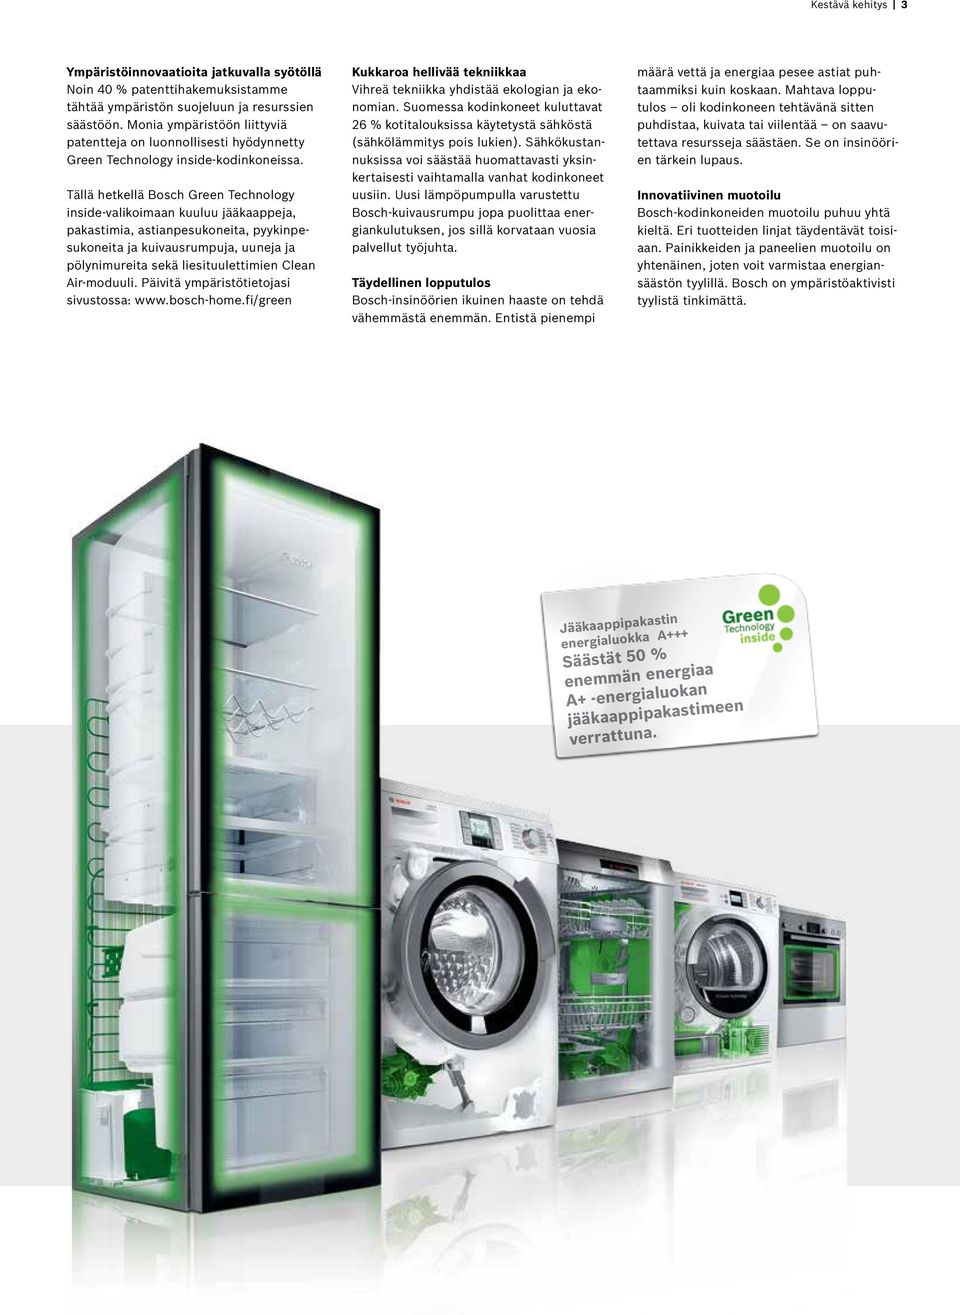 Tällä hetkellä Bosch Green Technology inside-valikoimaan kuuluu jääkaappeja, pakastimia, astianpesukoneita, pyykinpesukoneita ja kuivausrumpuja, uuneja ja pölynimureita sekä liesituulettimien Clean